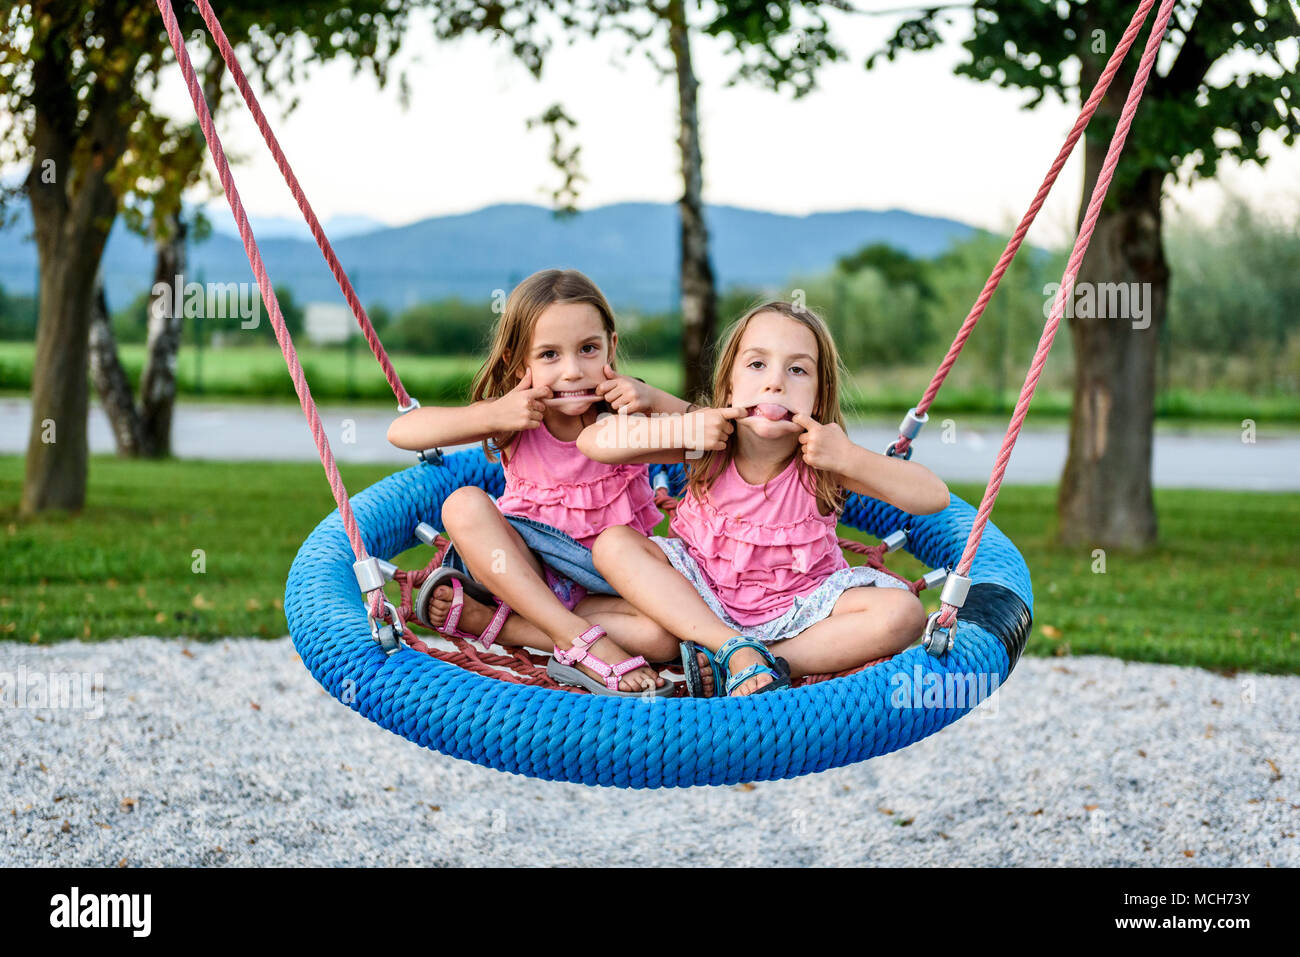 Dos gemelas en tela de araña nido swing en playground. Los niños activos jugando con columpio gigante-N-Slide Swing Web Monster en juegos al aire libre Foto de stock